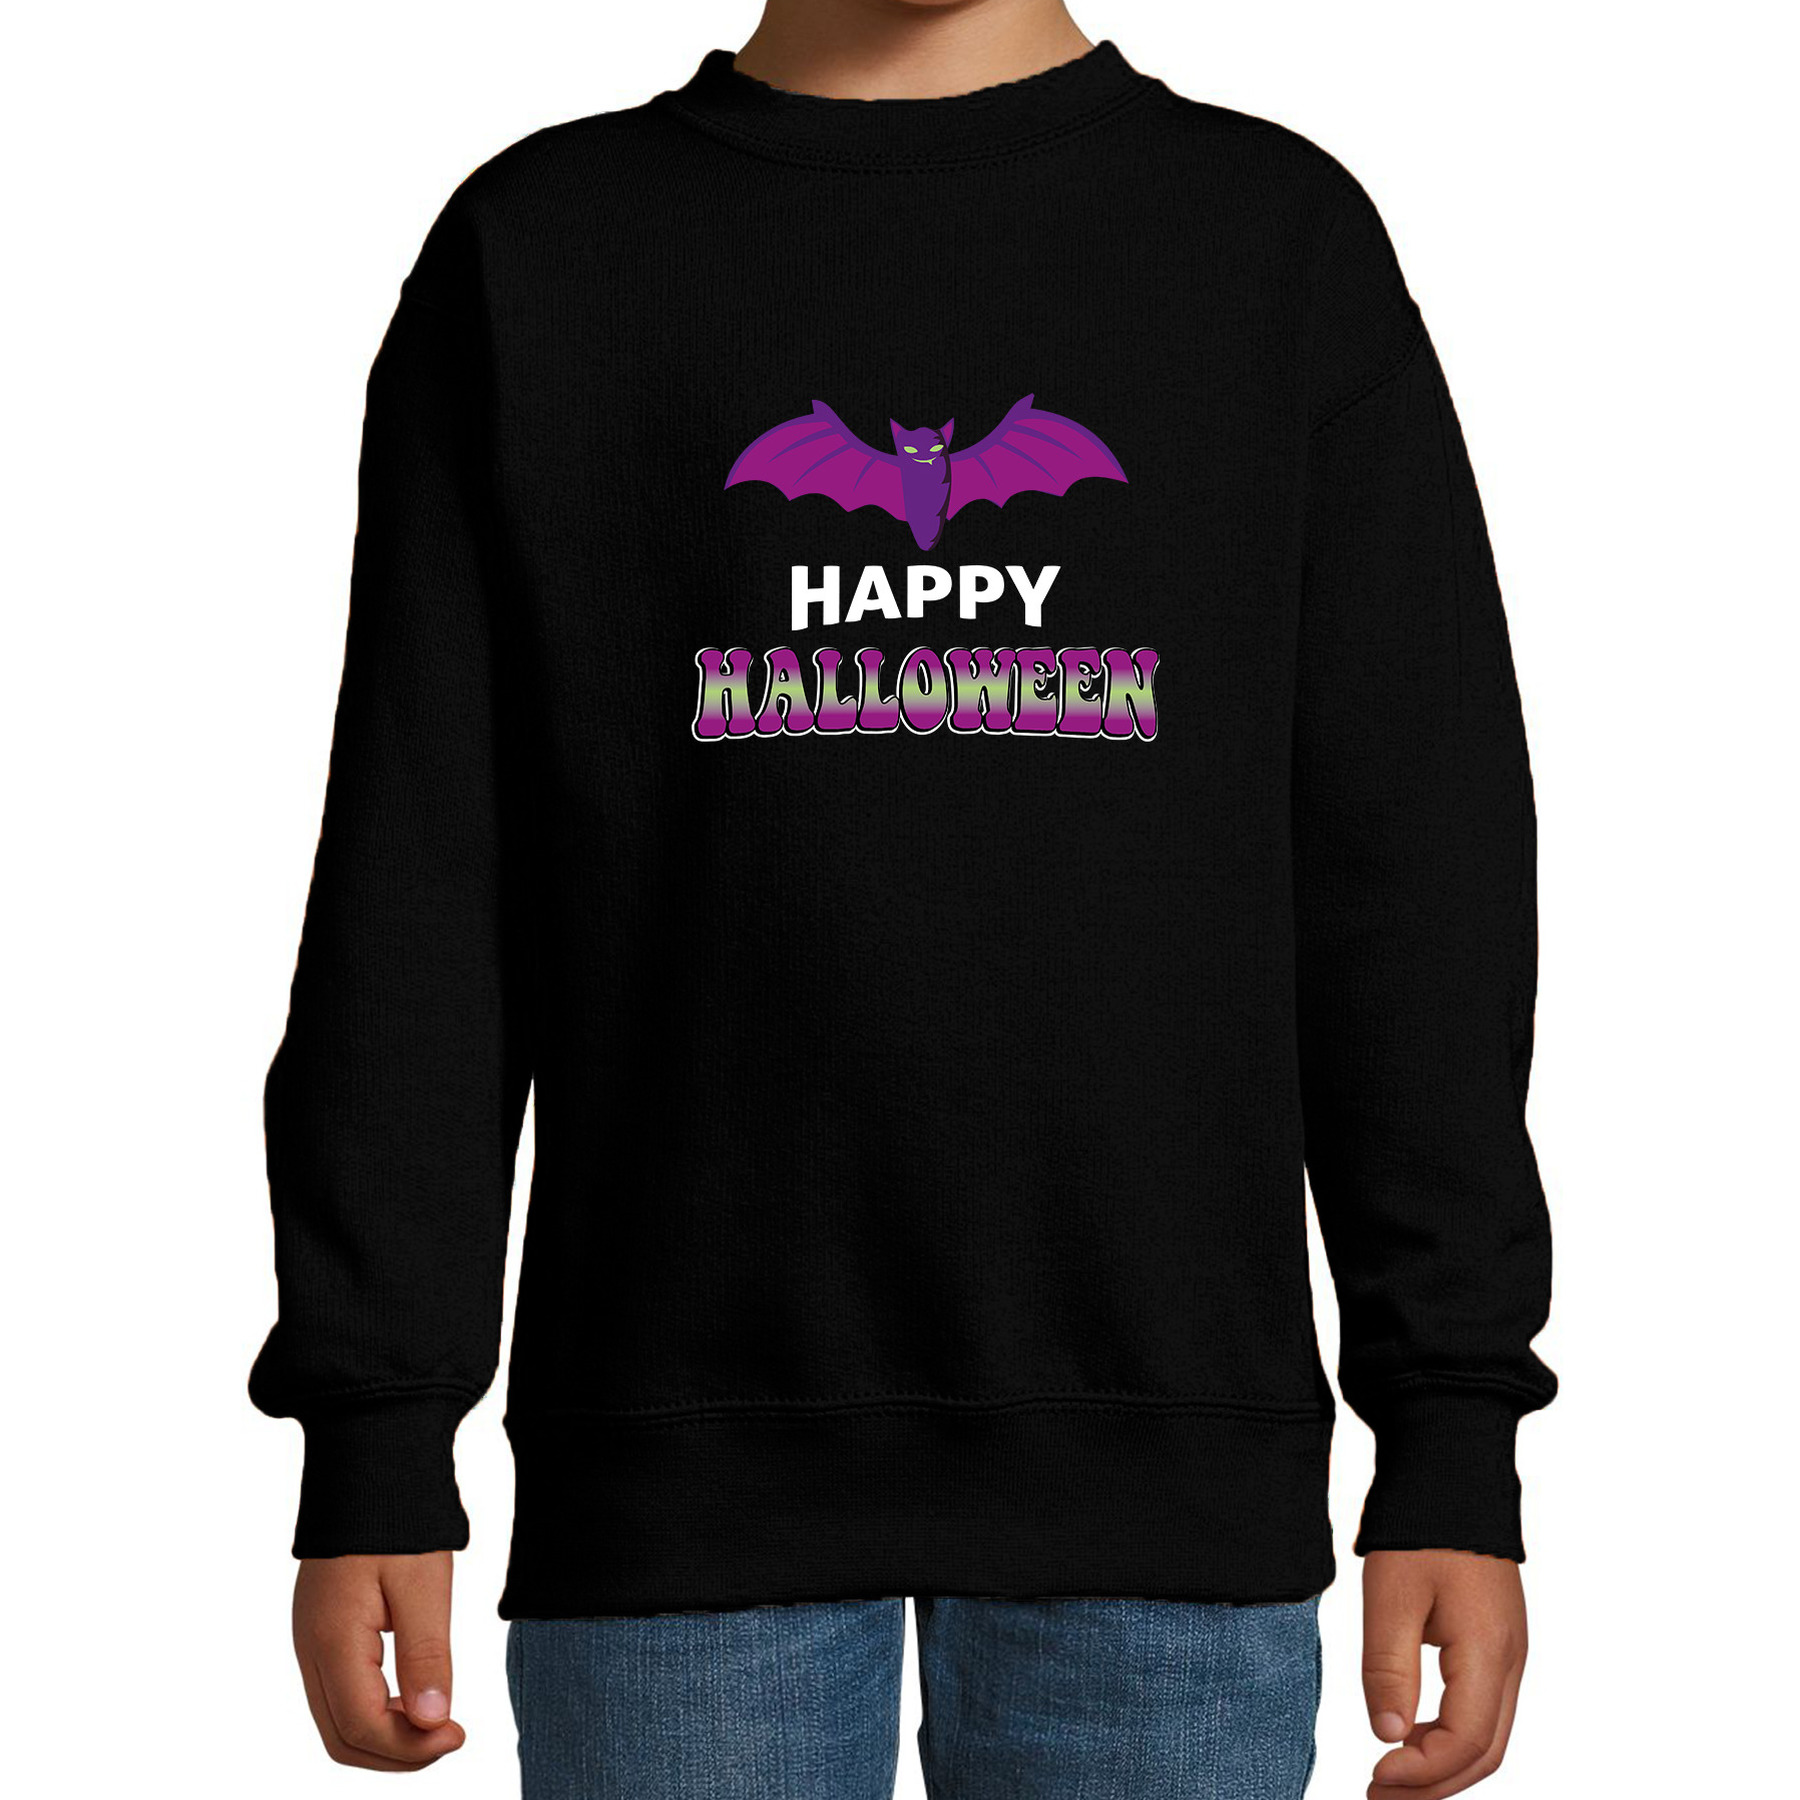 Vleermuis / happy halloween verkleed sweater zwart voor kinderen